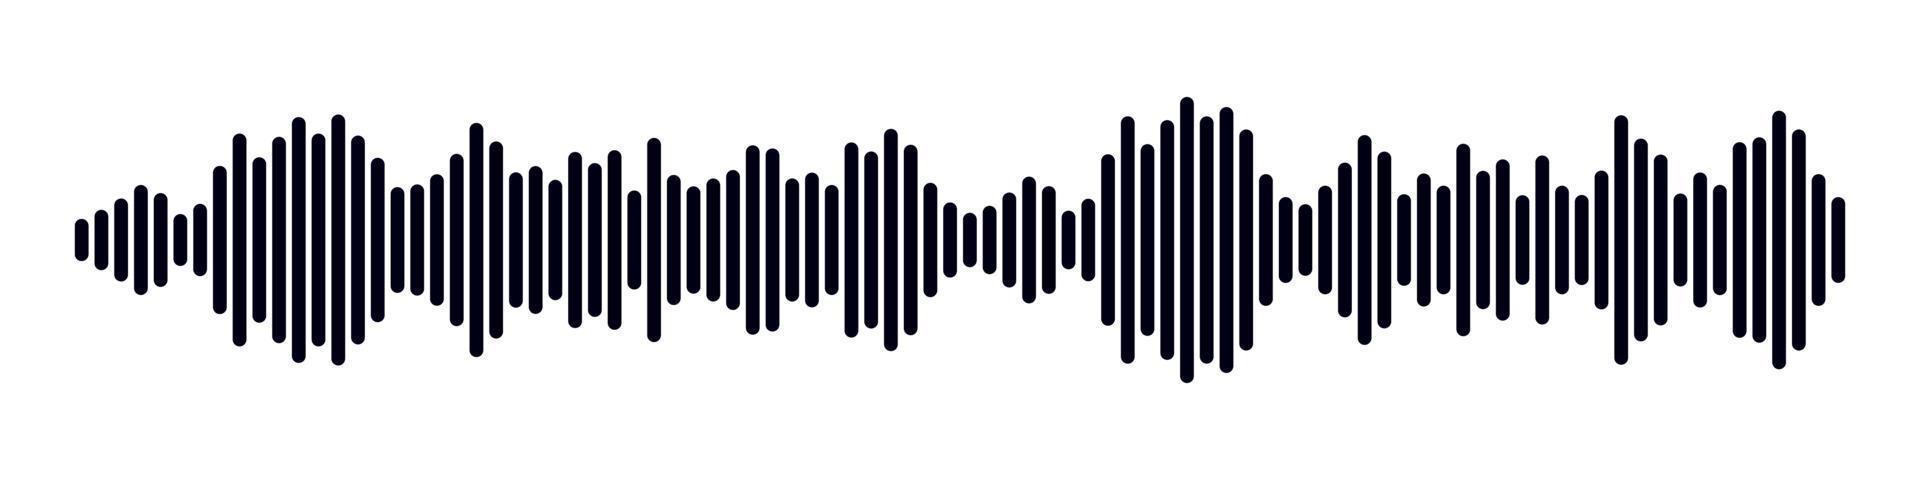 du son radio former. abstrait la musique l'audio onde sonore. vecteur isolé illustration